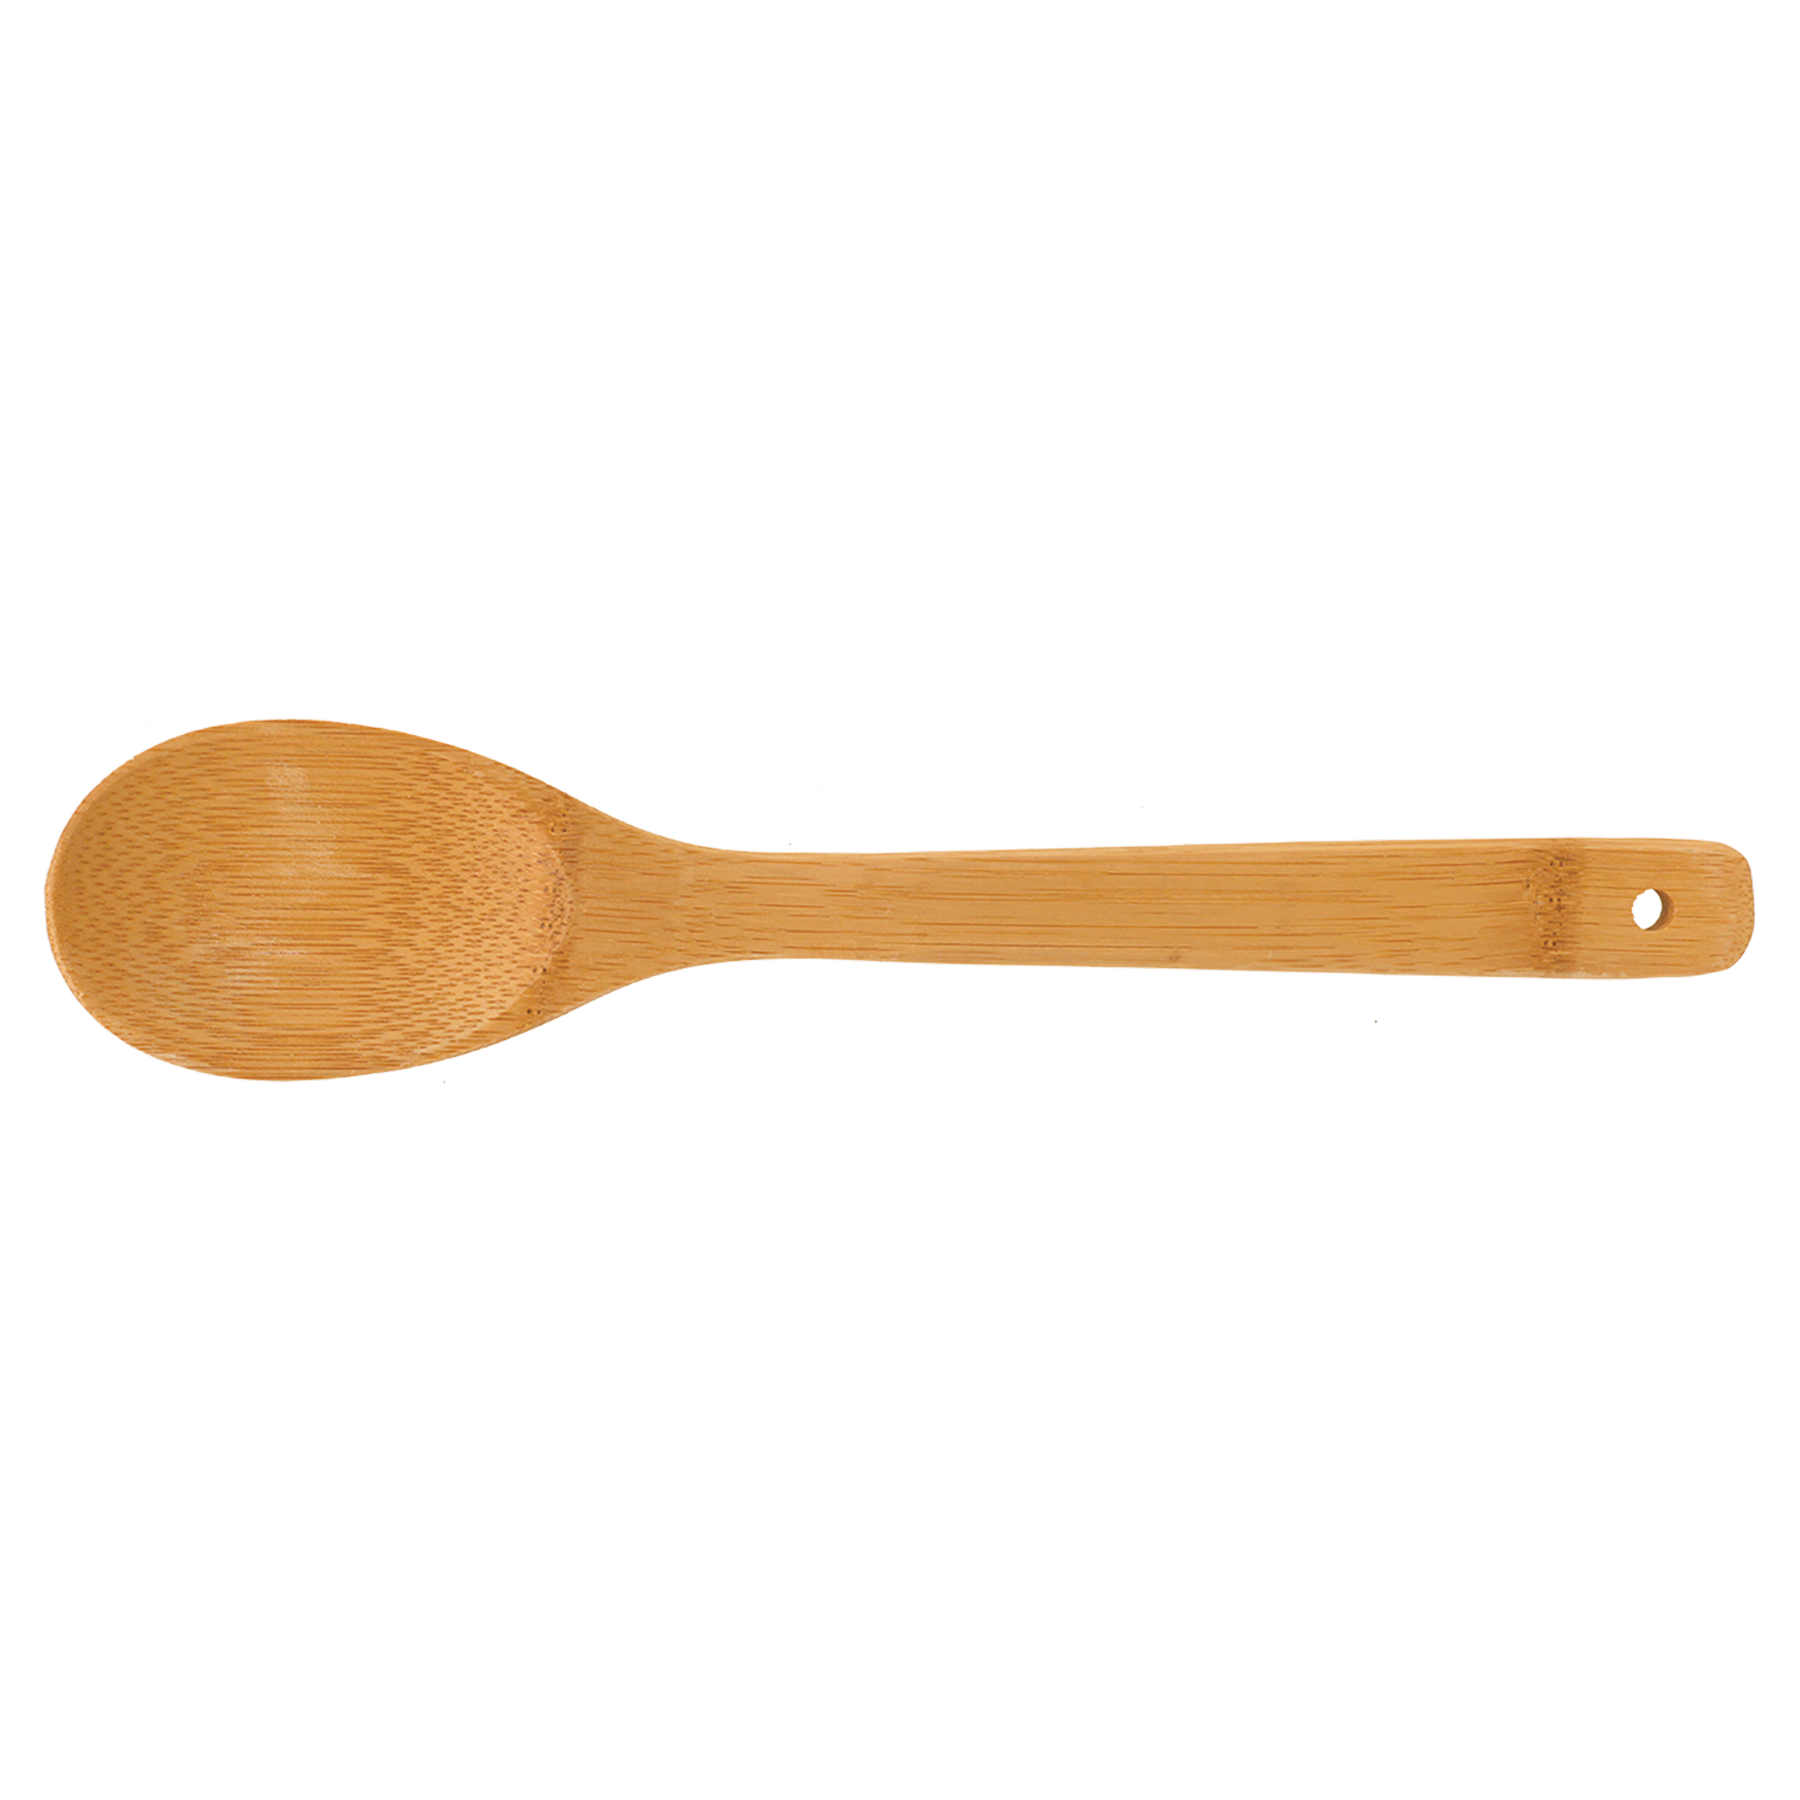 12" Bamboo Salad Spoon